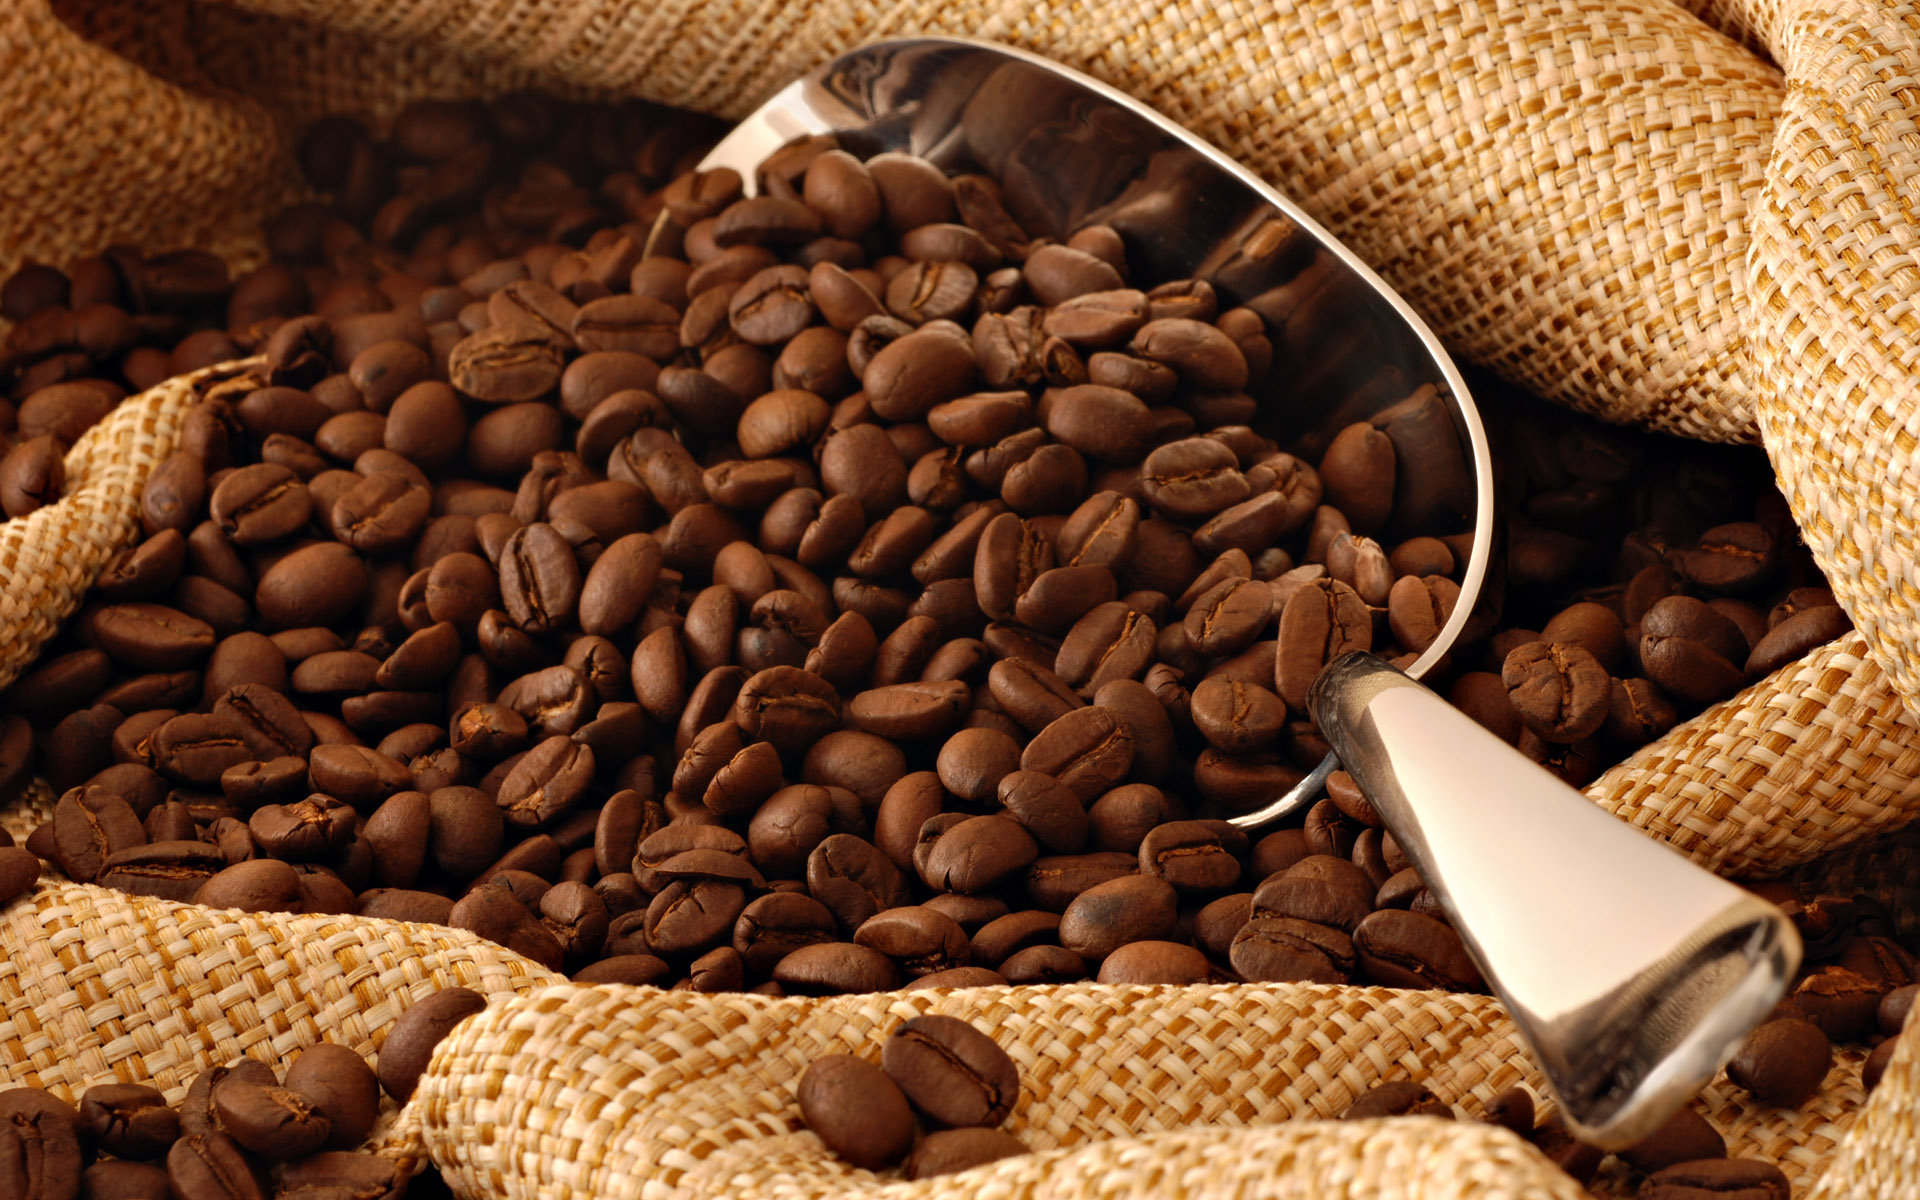 Ринок кави в Україні зріс за перше півріччя на 8,9% – дані компанії Pro-Consulting. Delo.ua